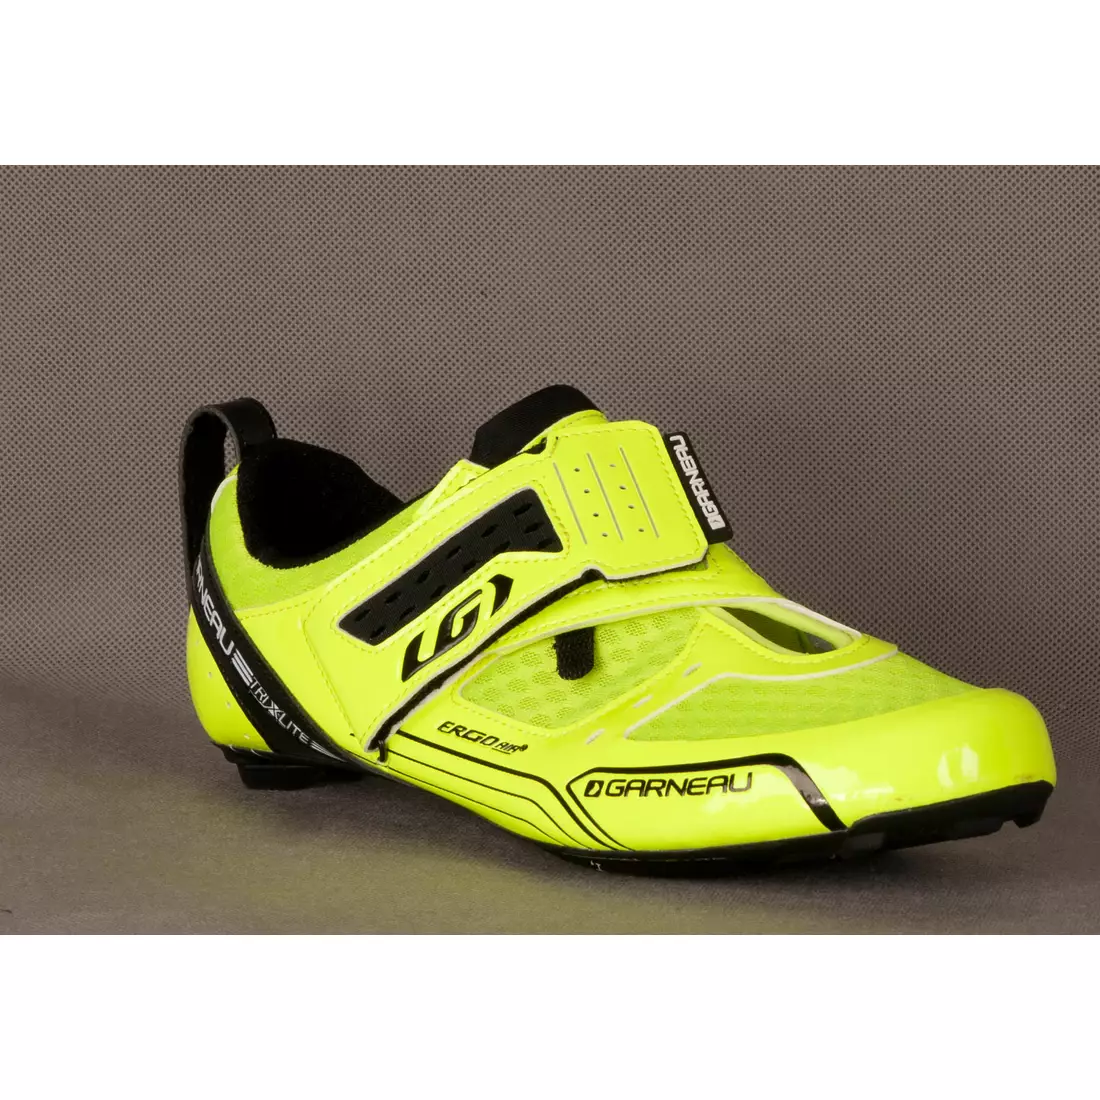 Pantofi de triatlon profesional LOUIS GARNEAU TRI X-LITE, fluor